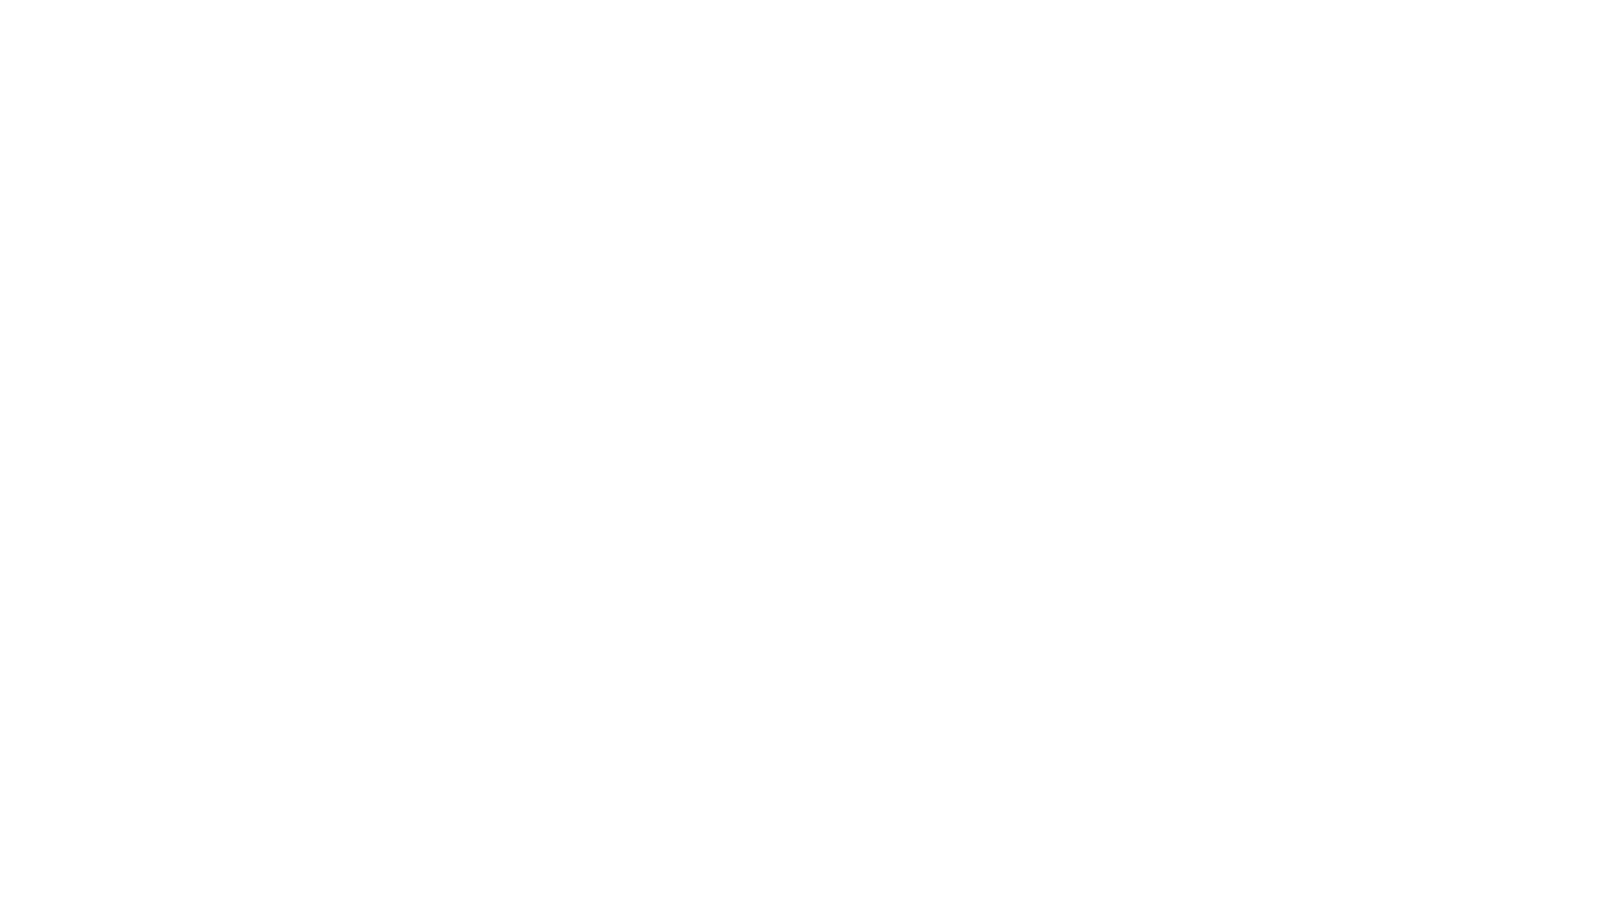 Видео зарисовка из мастерской Павла Долгих,  где строится Малая лодья из Гокстада. 
Проект лодьи : https://ckboat.ru/malaya-lodya-iz-gokstada/
ПРИСОЕДИНЯЙСЯ:
Сайт https://ckboat.ru/
Телеграм:  https://t.me/canoekayakboat
Группа в ВК https://vk.com/canoe_kayak_boat
Музыка взята с сайта www.epidemicsound.com